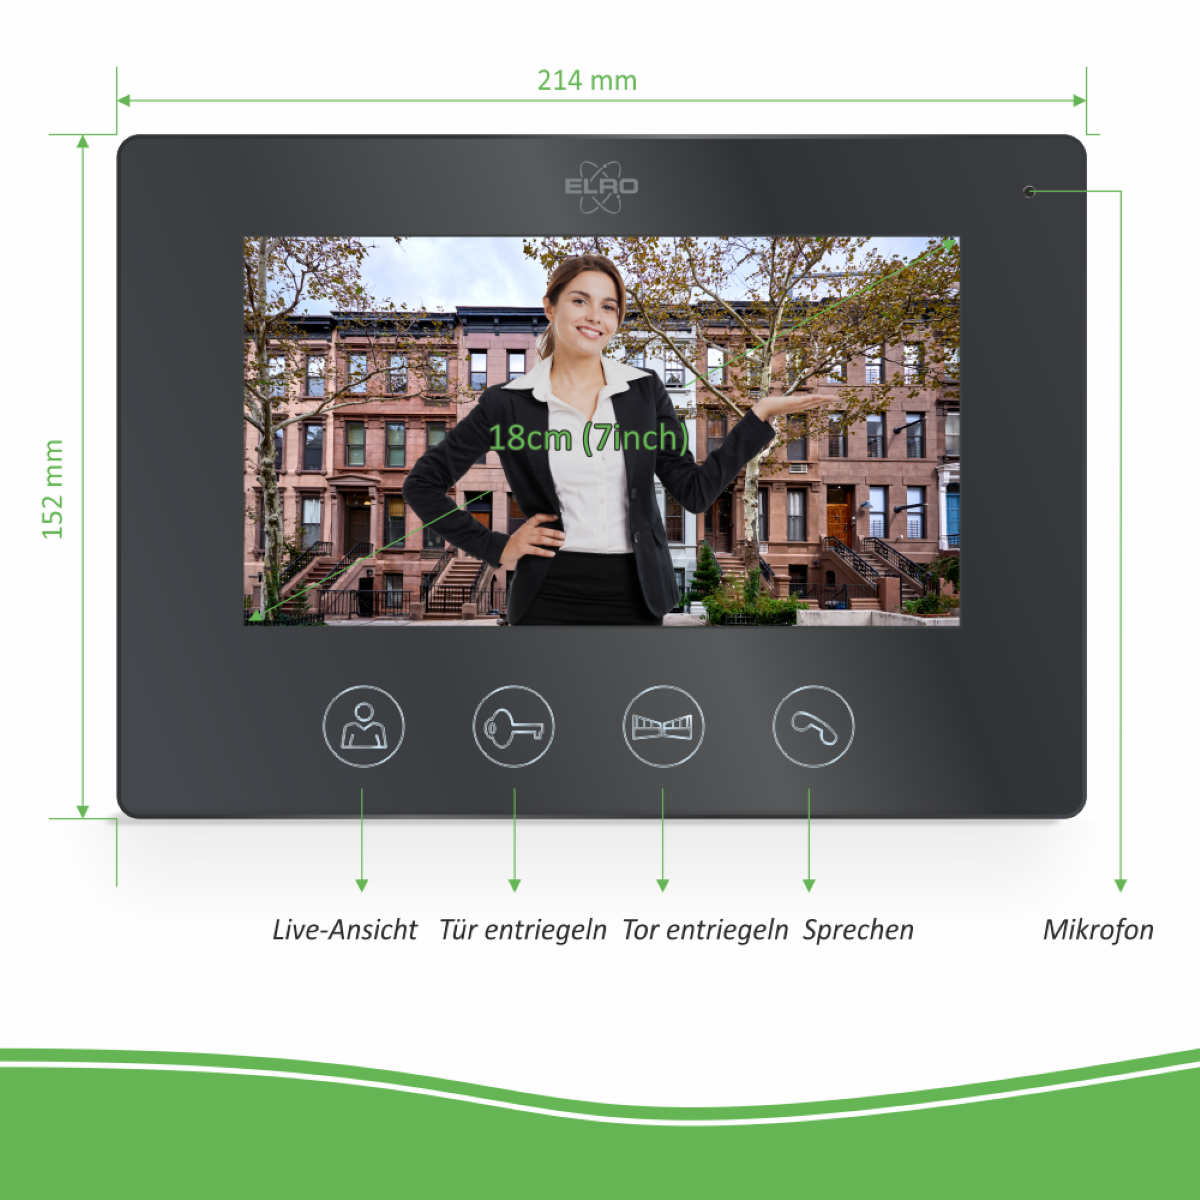 Schwarz Monitor mit Verdrahtete ELRO Türsprechanlage und App, DV50